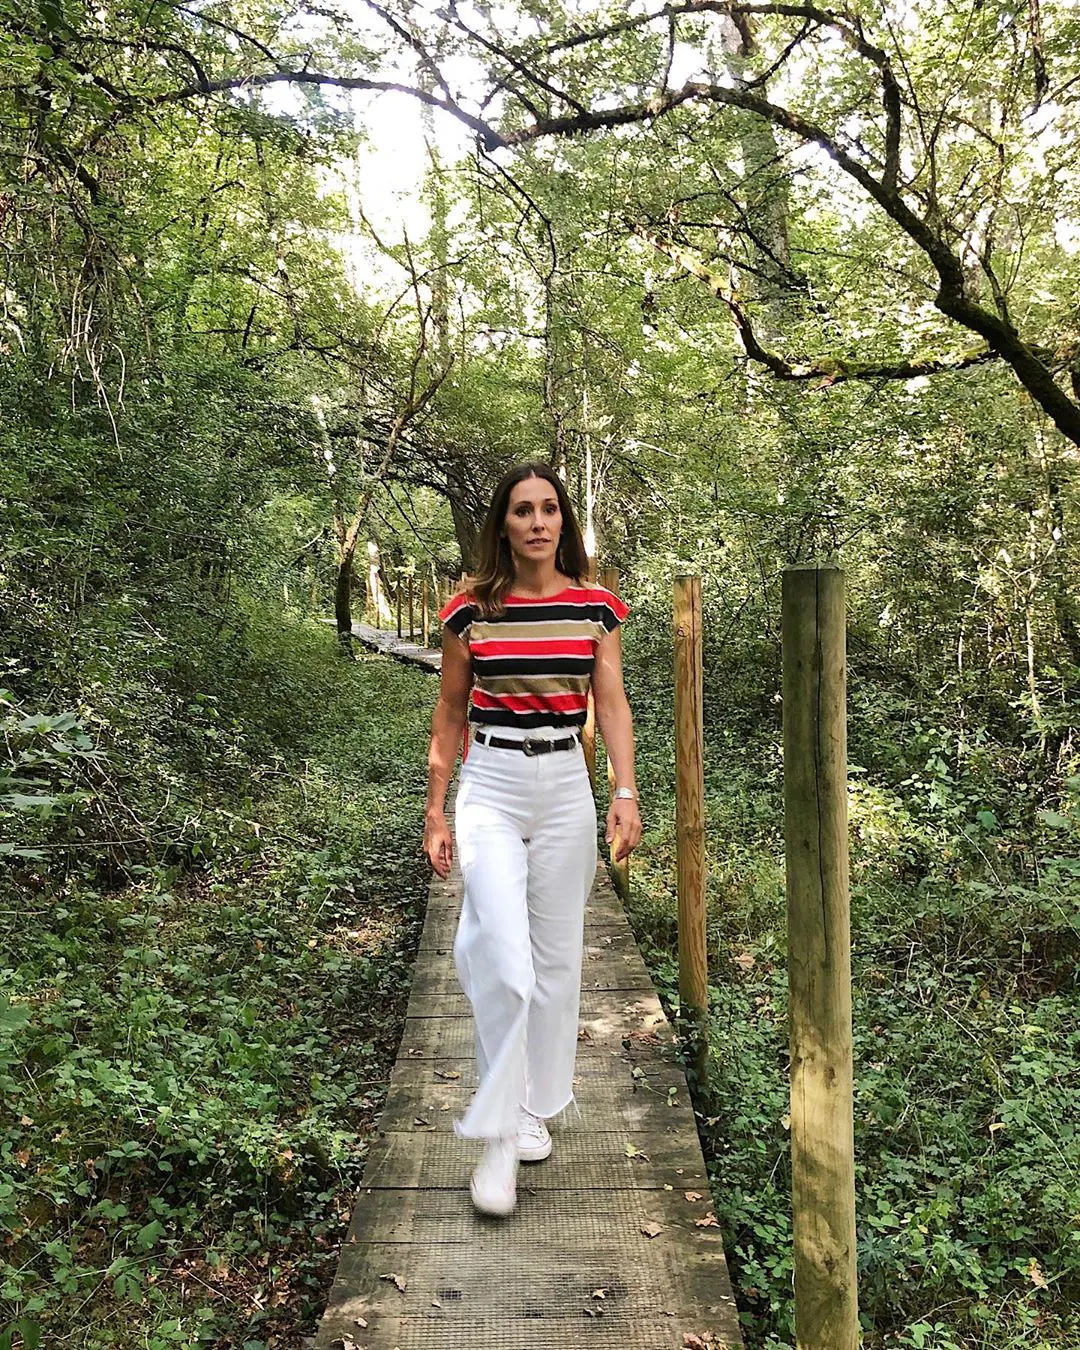 La presentadora Adela Úcar ha elegido un pantalón ancho de Zara en color blanco y con los bajos deshilachados para dar un paseo por el bosque. La camiseta de rayas es de una tienda vintage y las zapatillas son Converse.